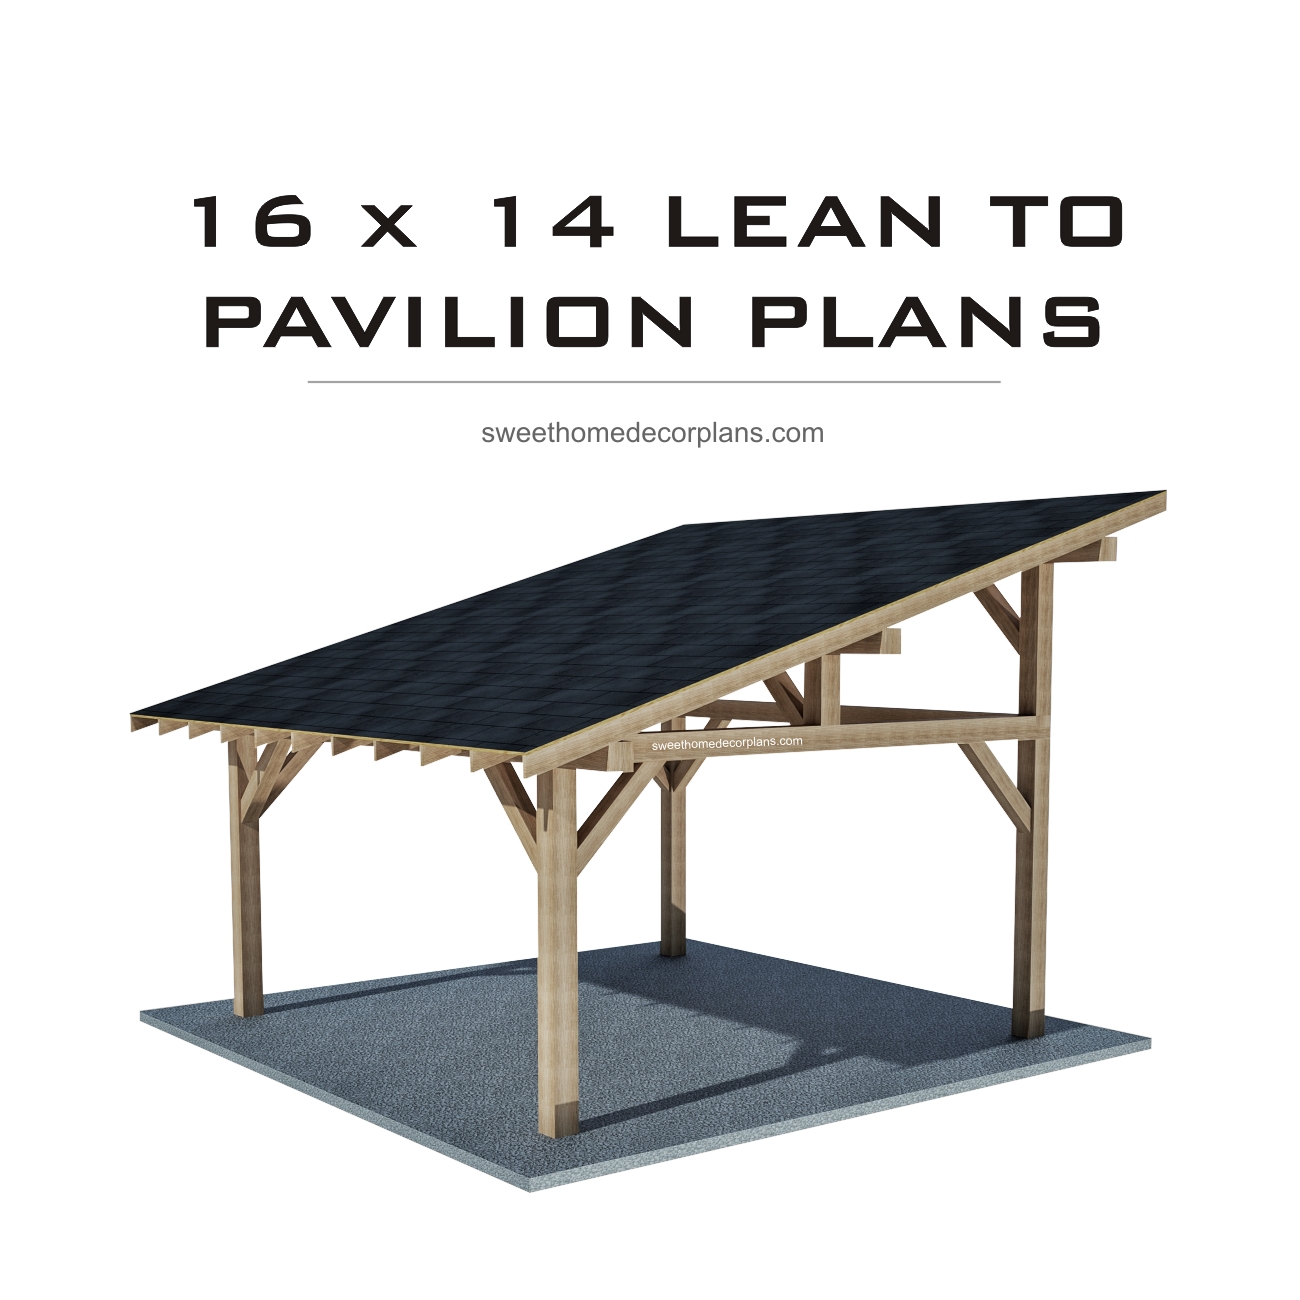 16-x-14-lean-to-pavilion-plans-wooden-gazebo-carport-pdf